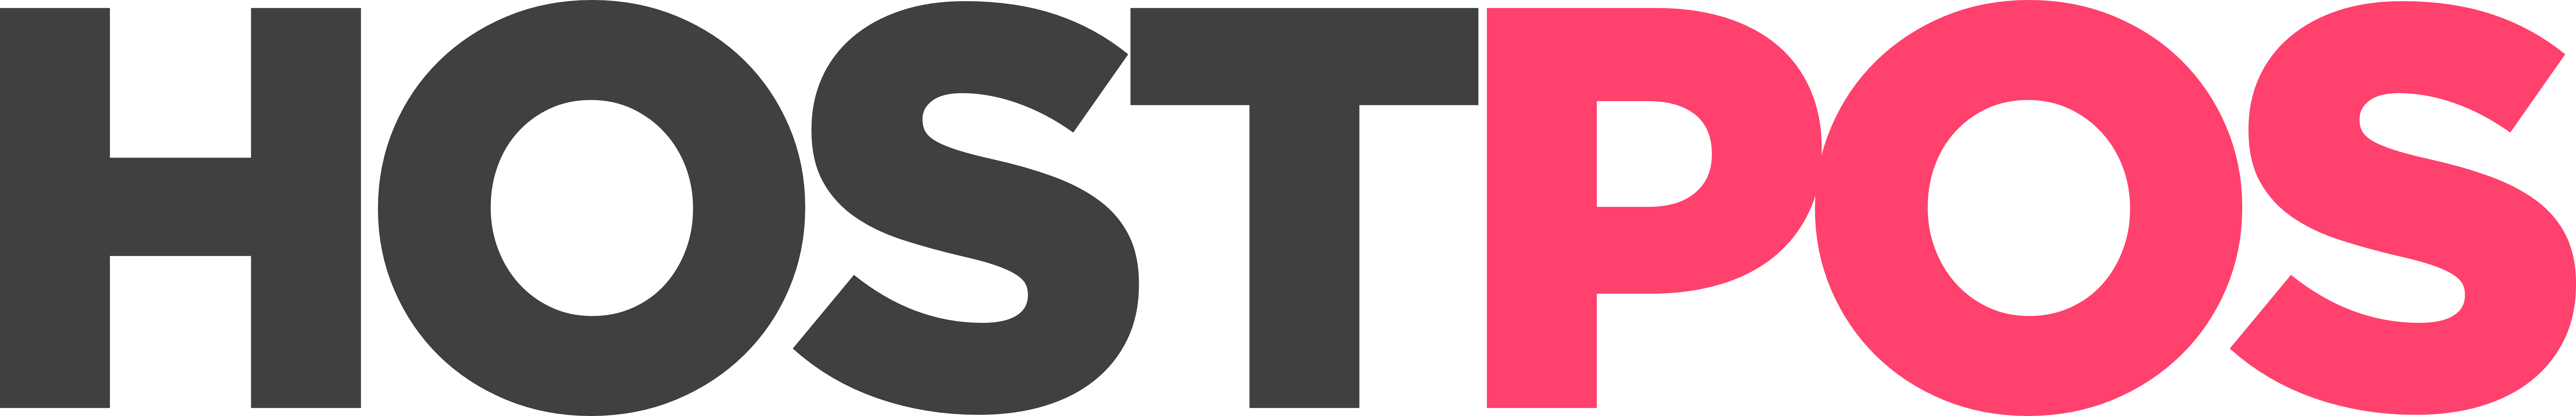 Hostpos logo in colour